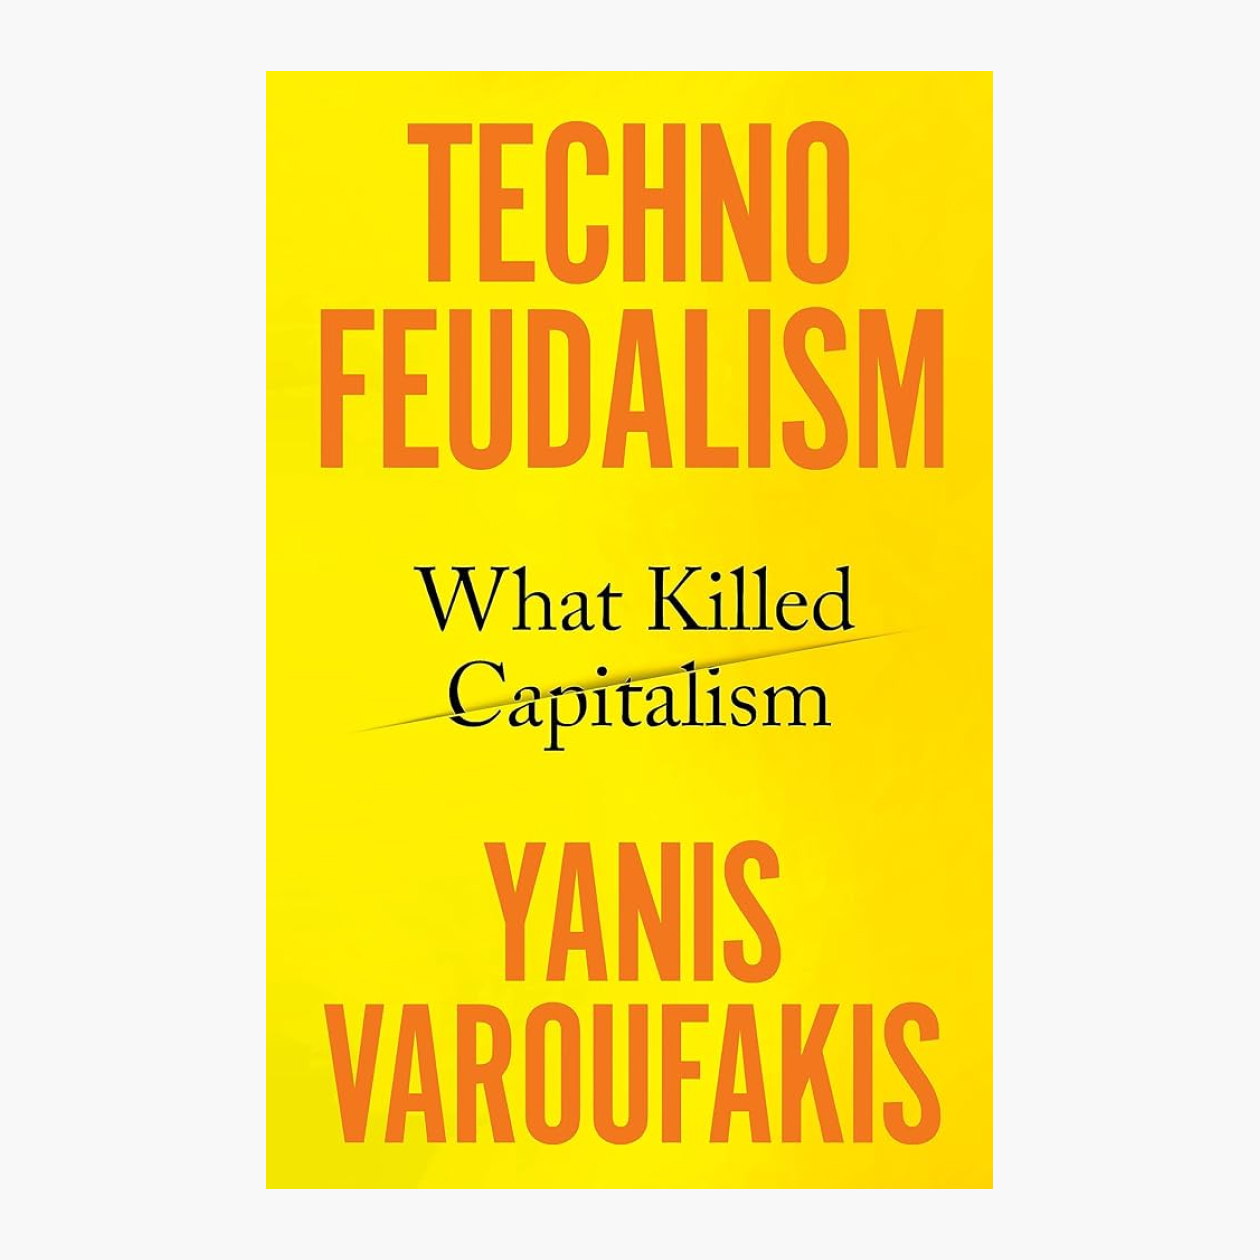 На русском книги Варуфакиса про технофеодализм в продаже пока нет. Источник: Amazon